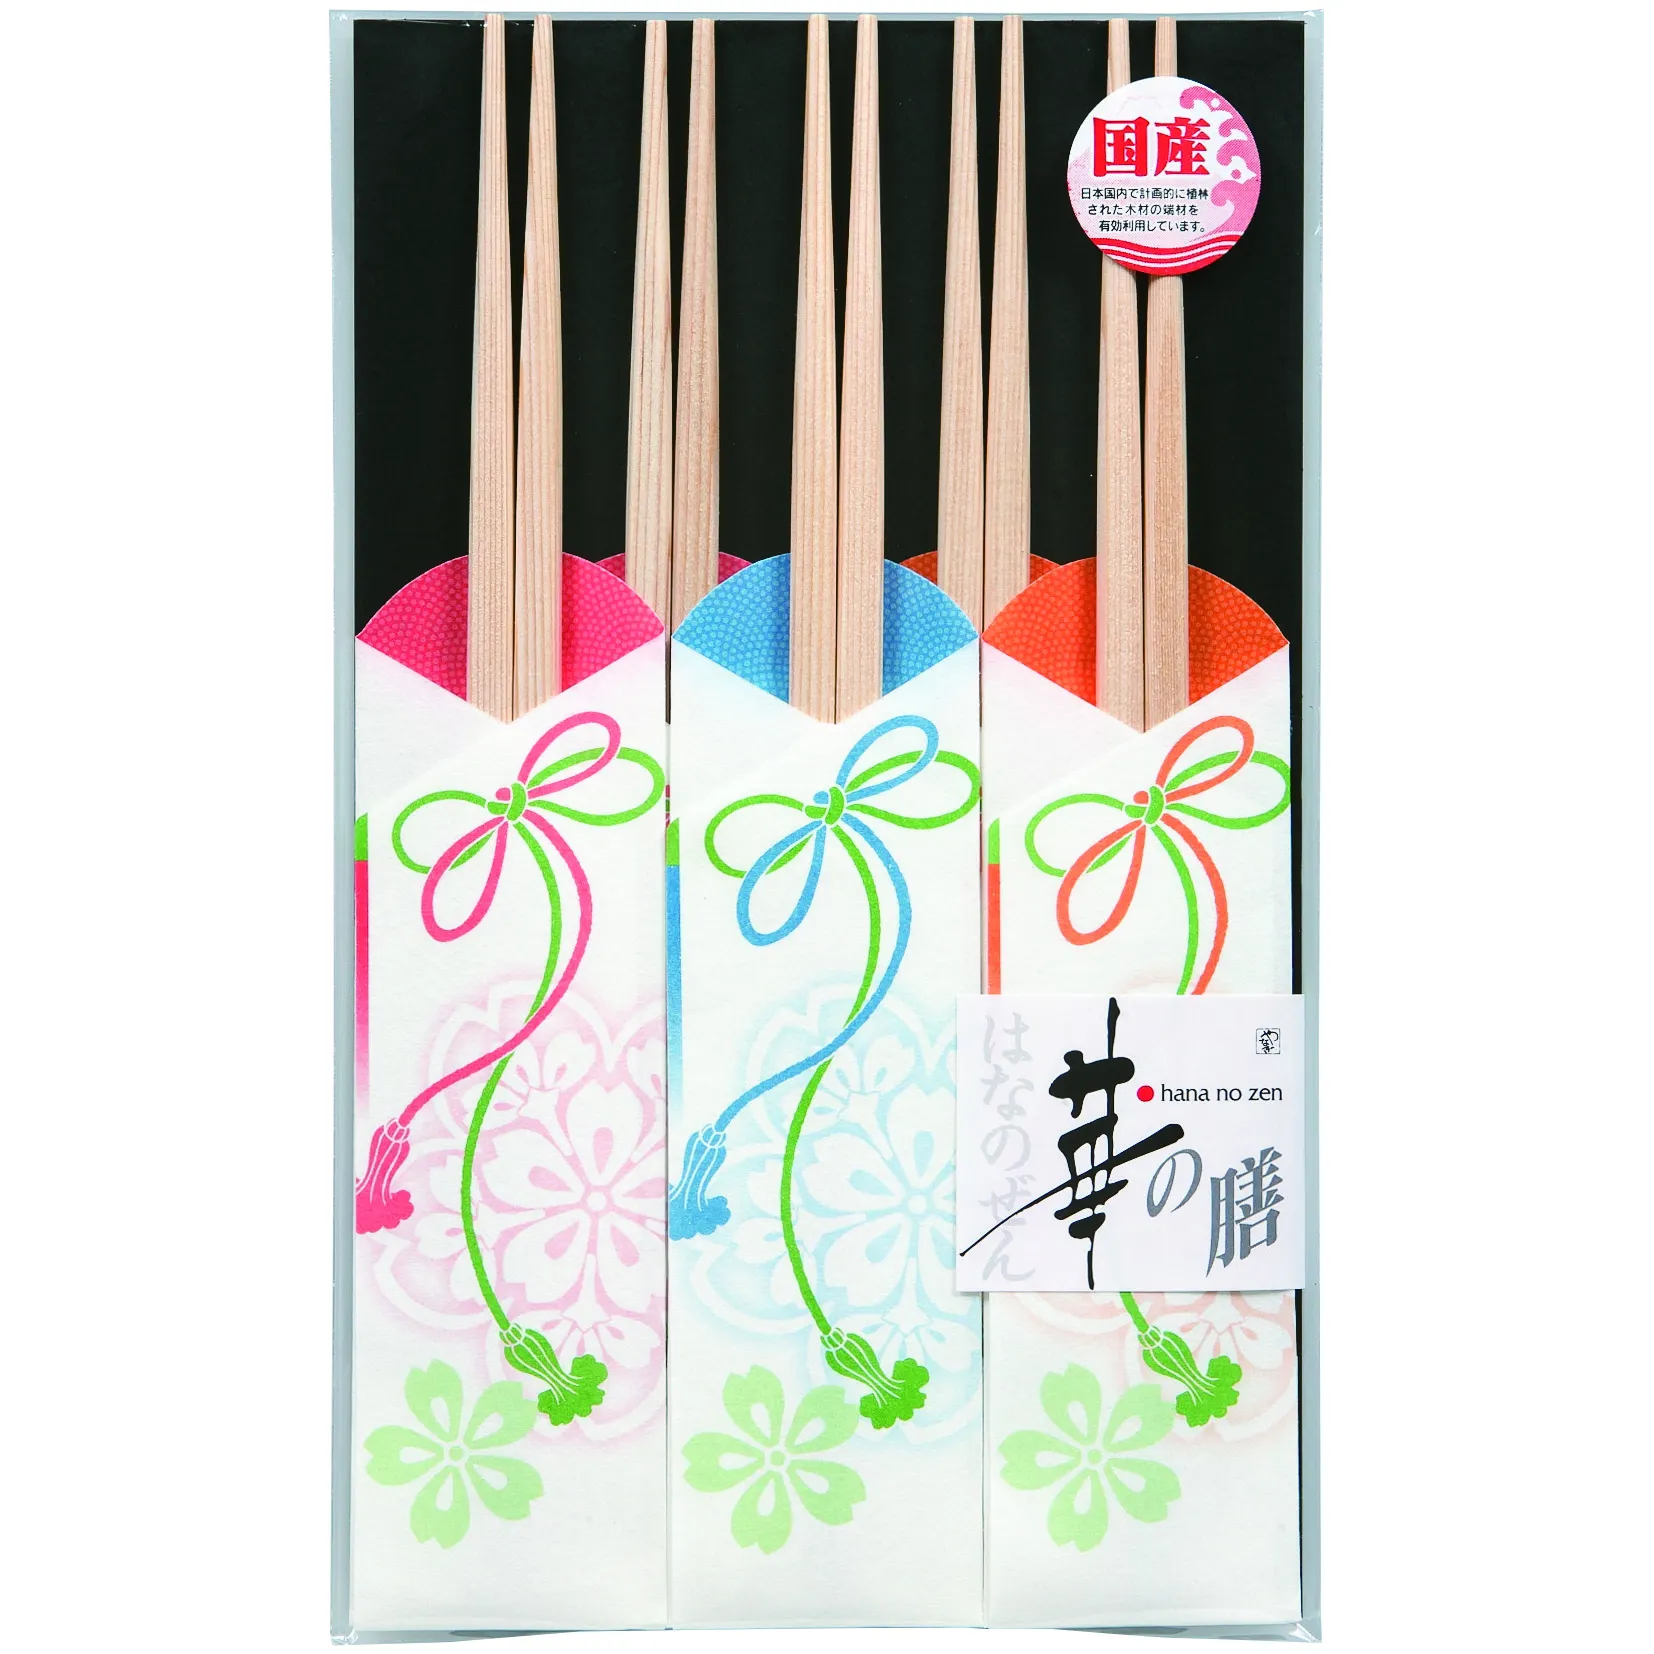 Japanese wooden chopstick disposable 50 pcs set restaurant use ceder gorgeous